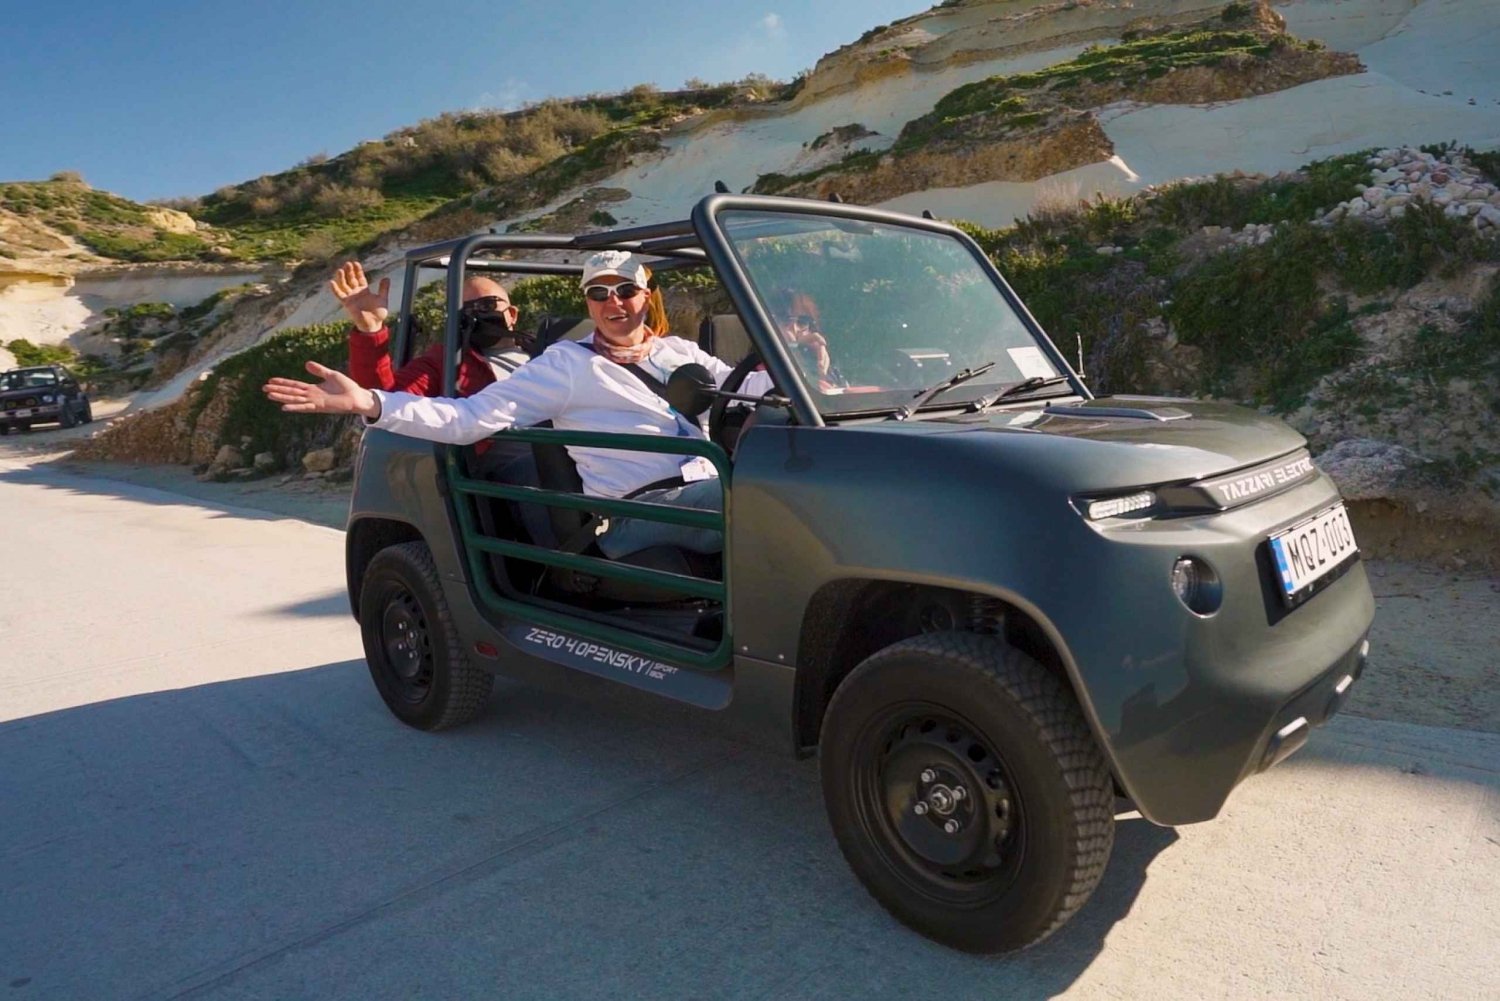 Desde Malta: Excursión guiada en Gozo con un E-Jeep autoconducido